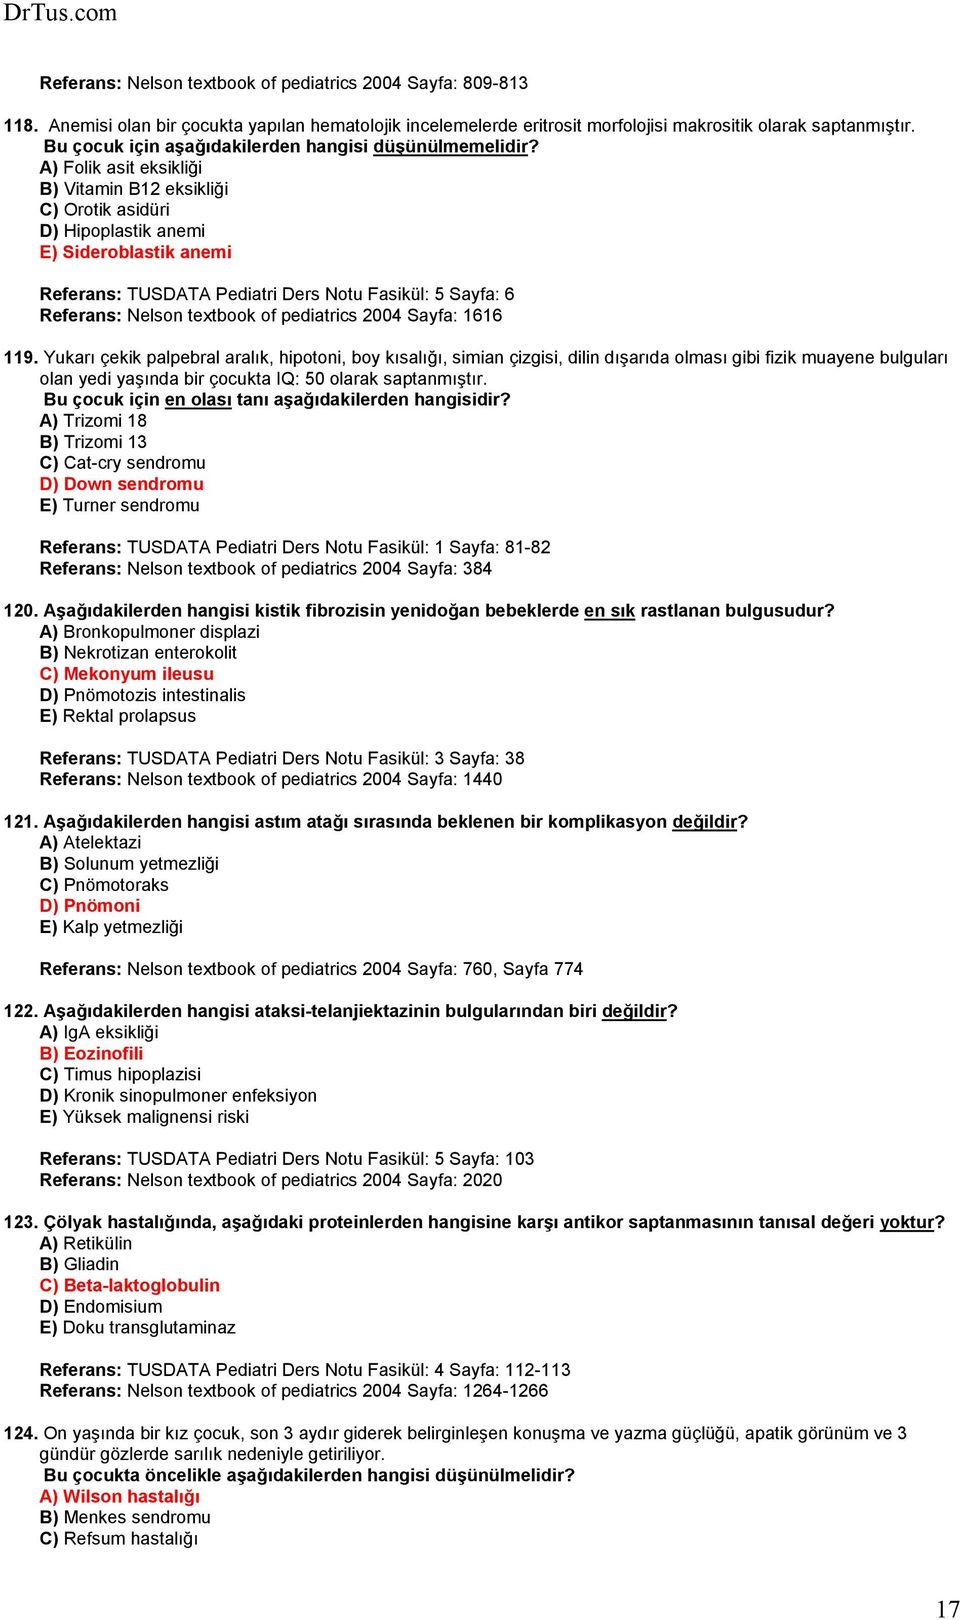 A) Folik asit eksikliği B) Vitamin B12 eksikliği C) Orotik asidüri D) Hipoplastik anemi E) Sideroblastik anemi Referans: TUSDATA Pediatri Ders Notu Fasikül: 5 Sayfa: 6 Referans: Nelson textbook of